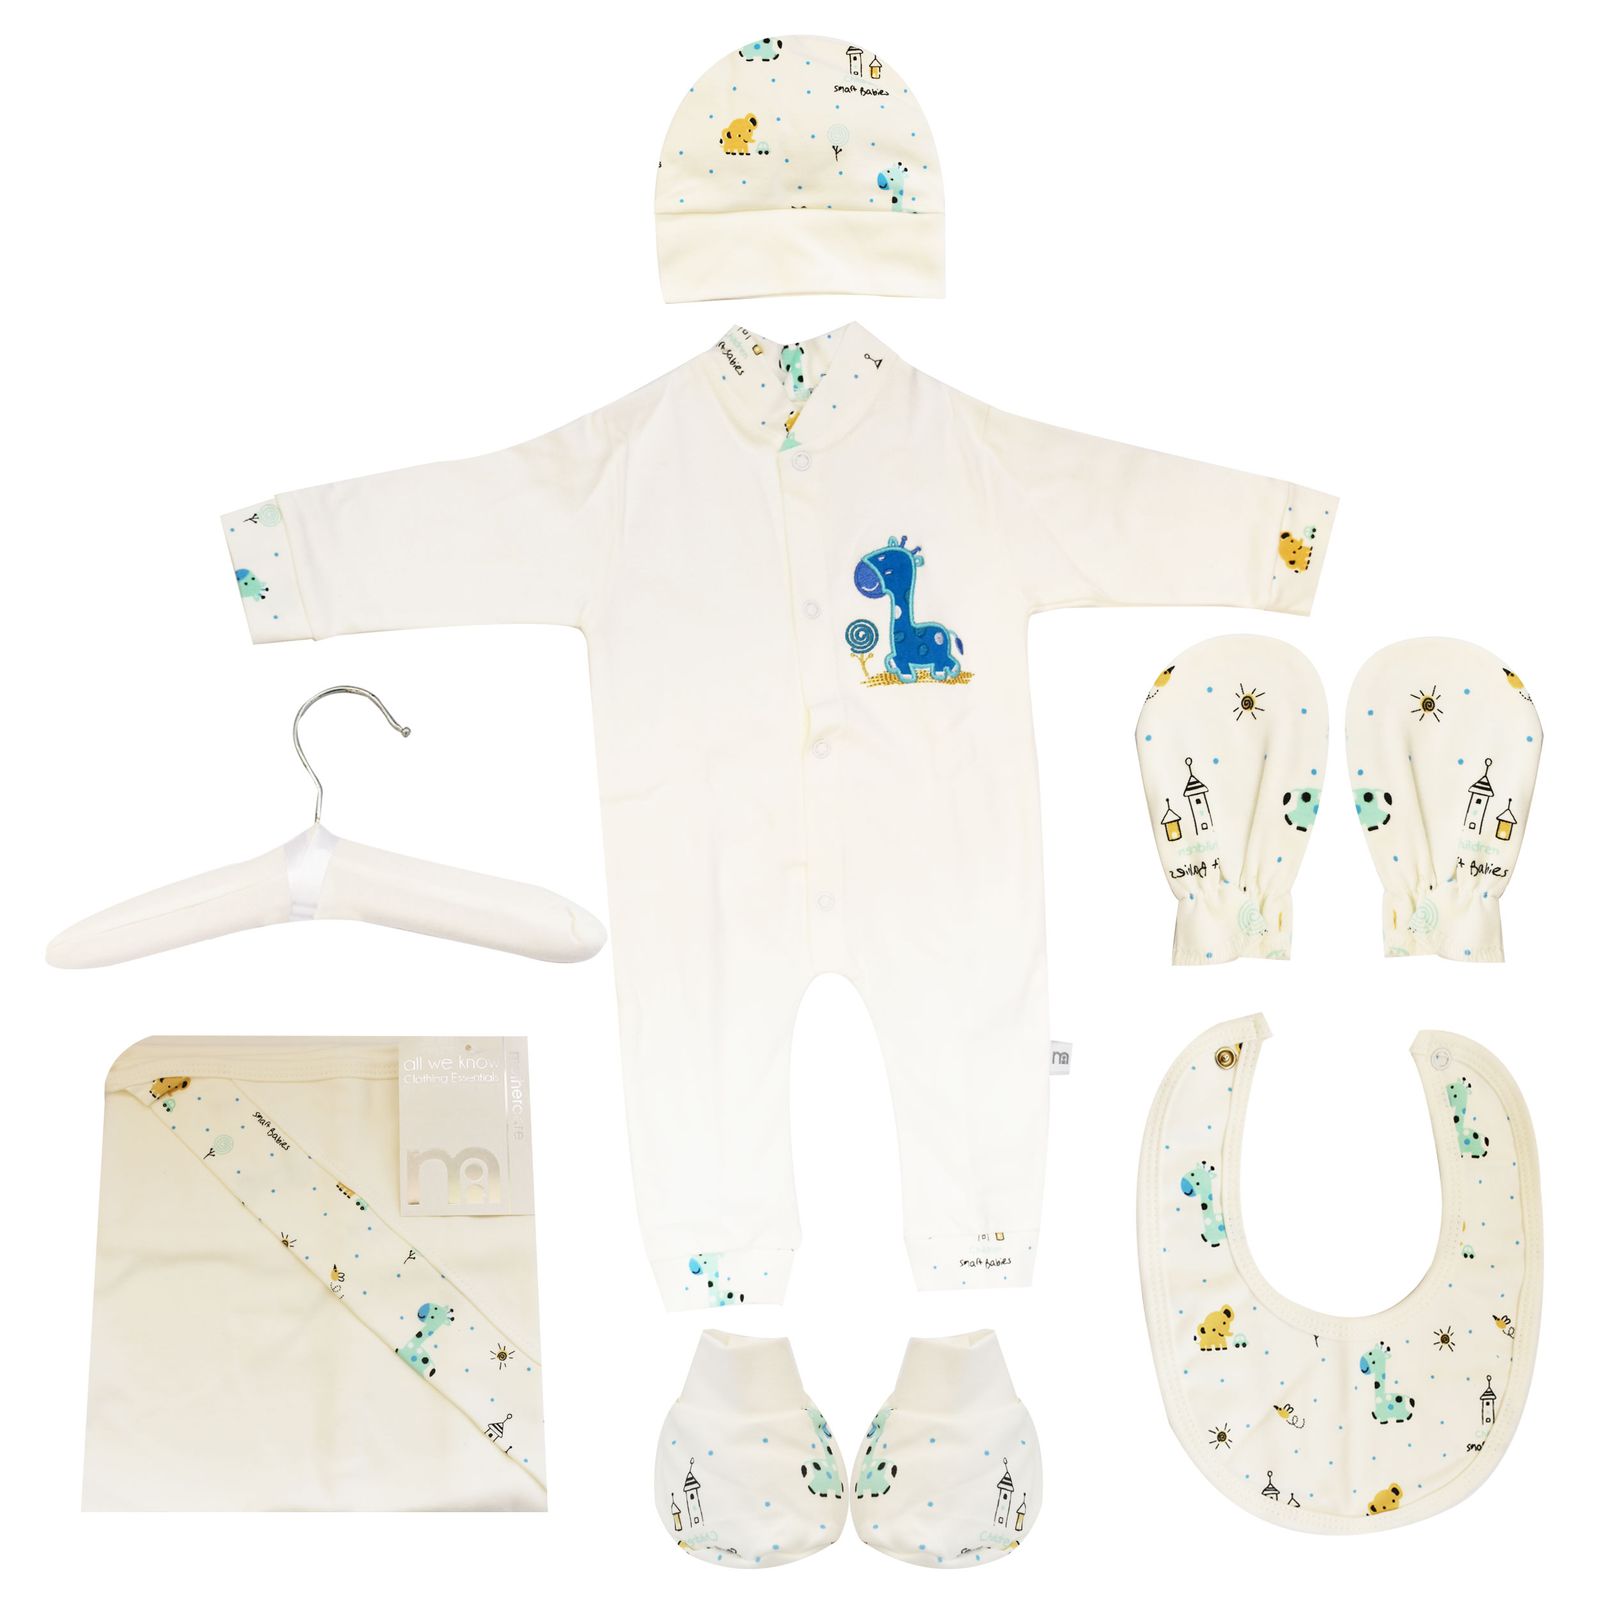  ست 7 تکه لباس نوزادی مادرکر طرح زرافه کد M454.12 -  - 1